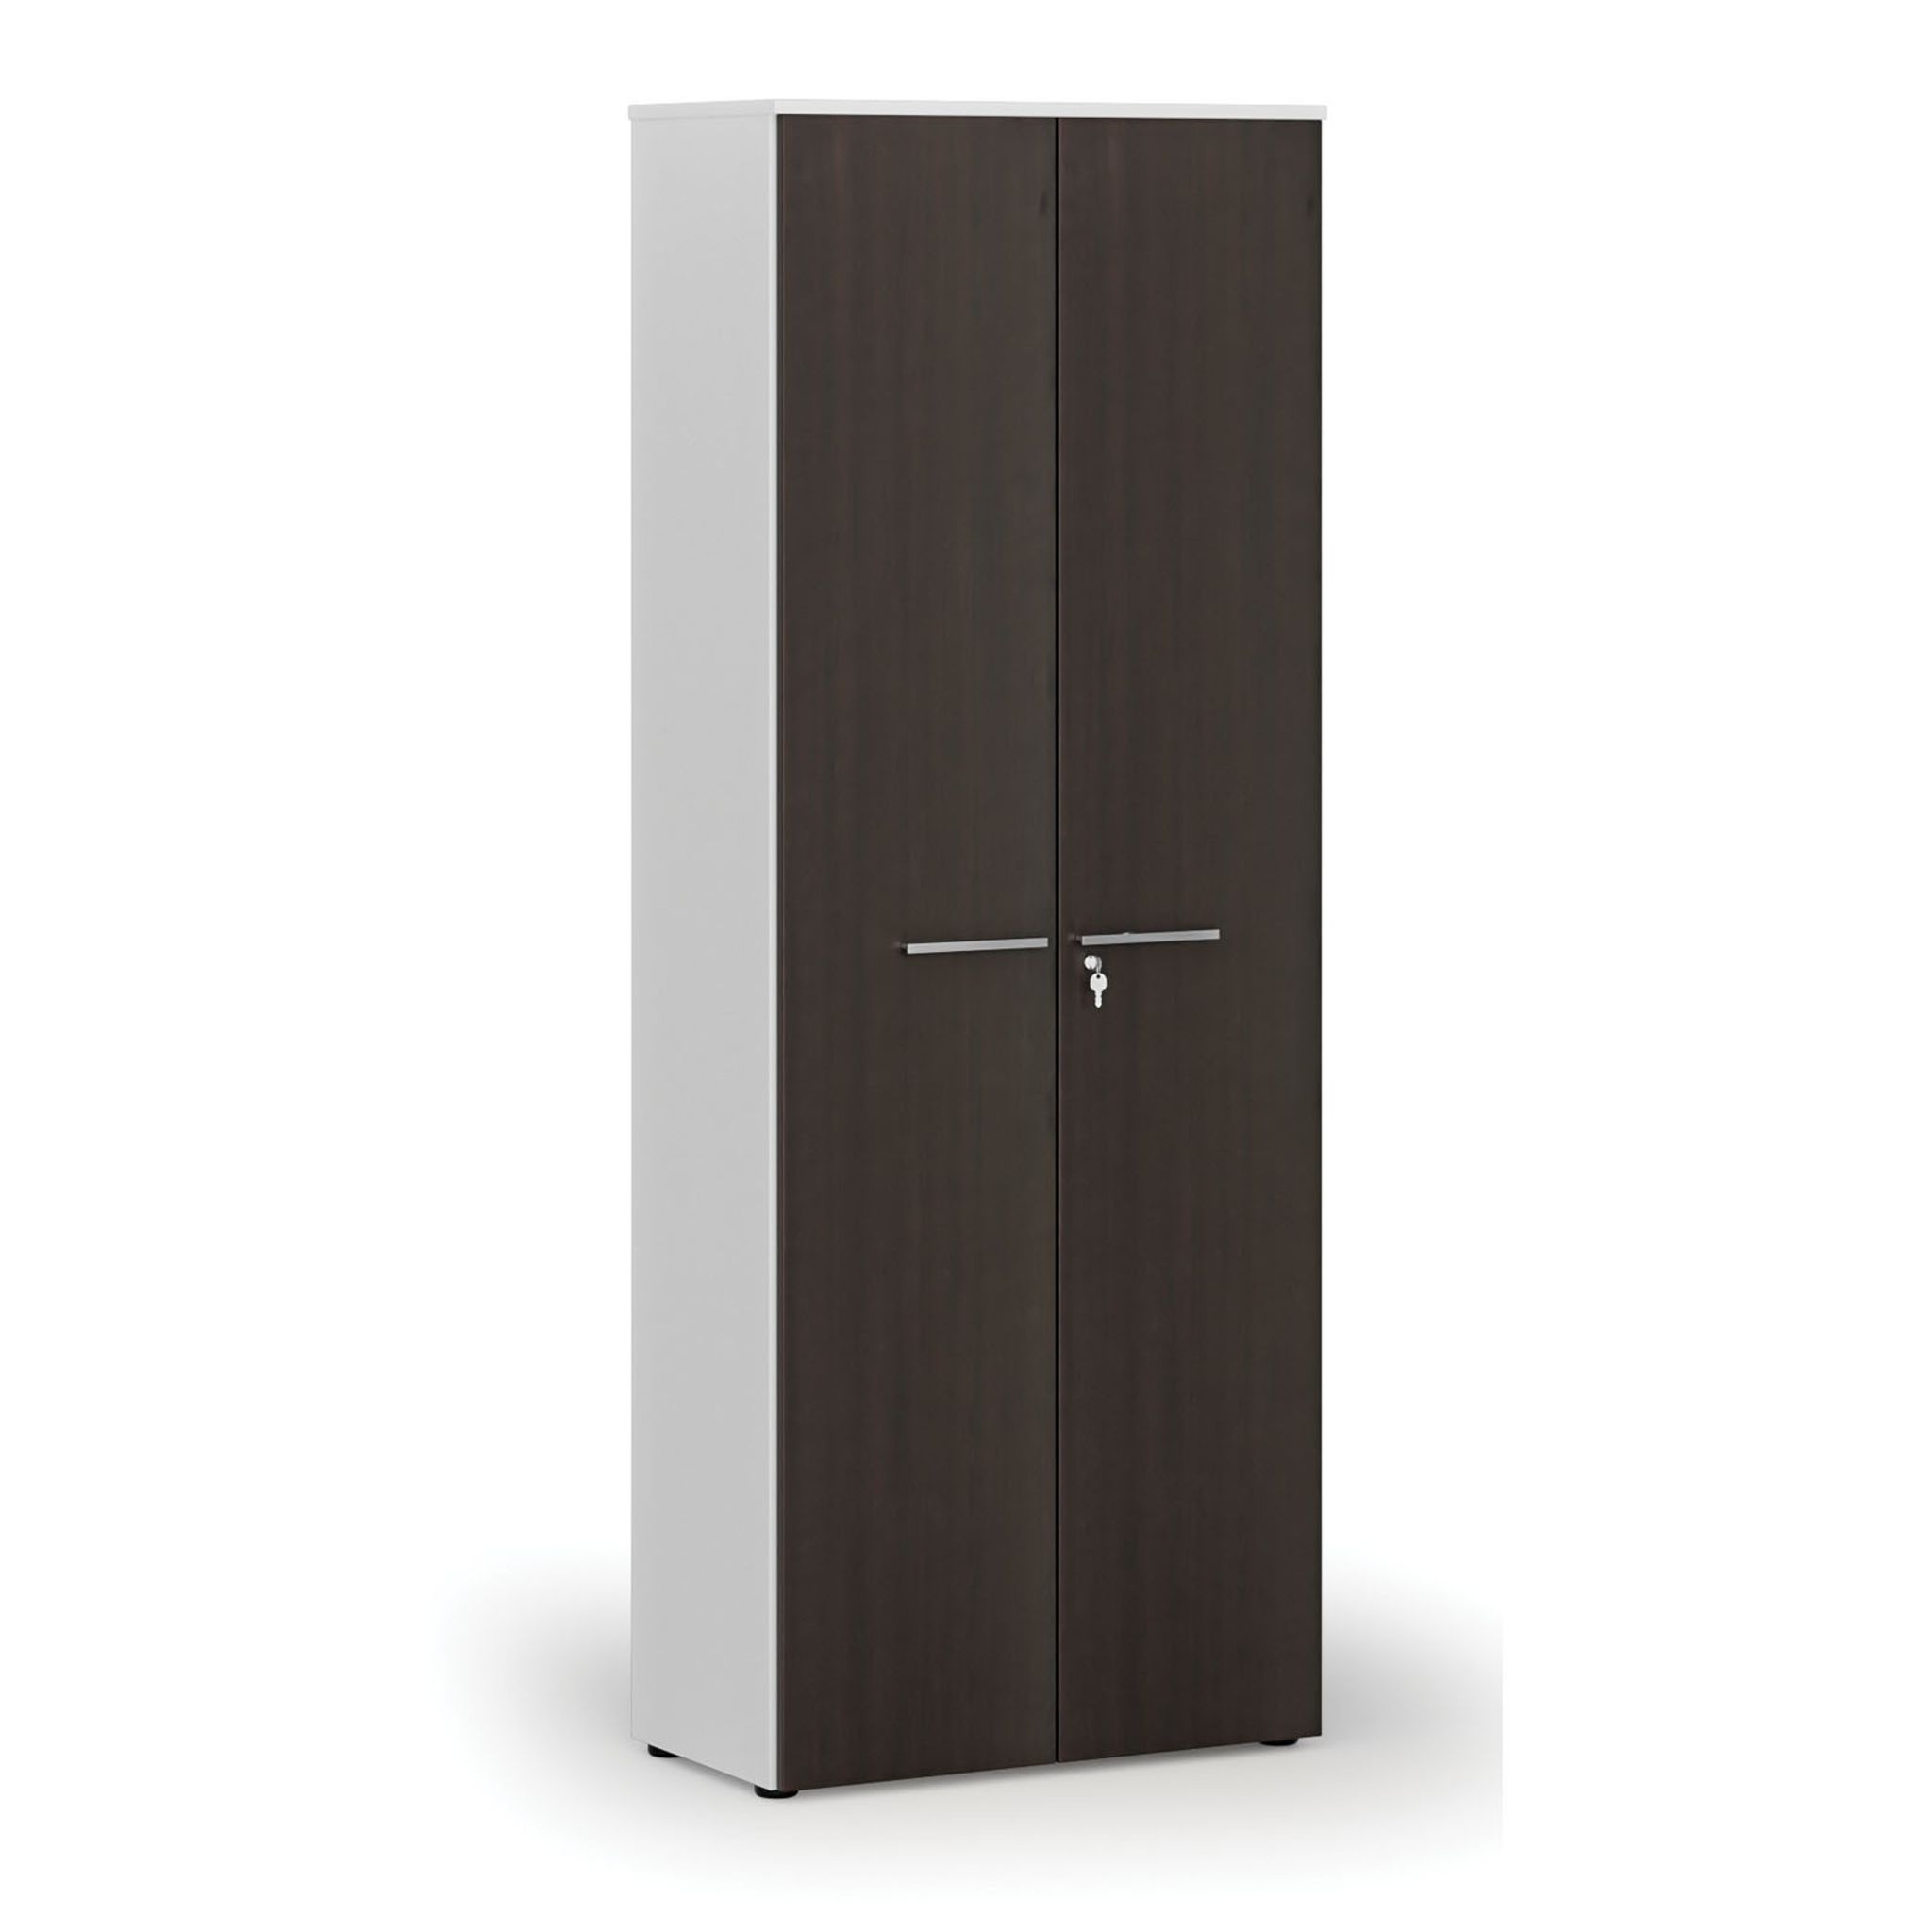 Szafa biurowa z drzwiami PRIMO WHITE, 2128 x 800 x 420 mm, biały/wenge